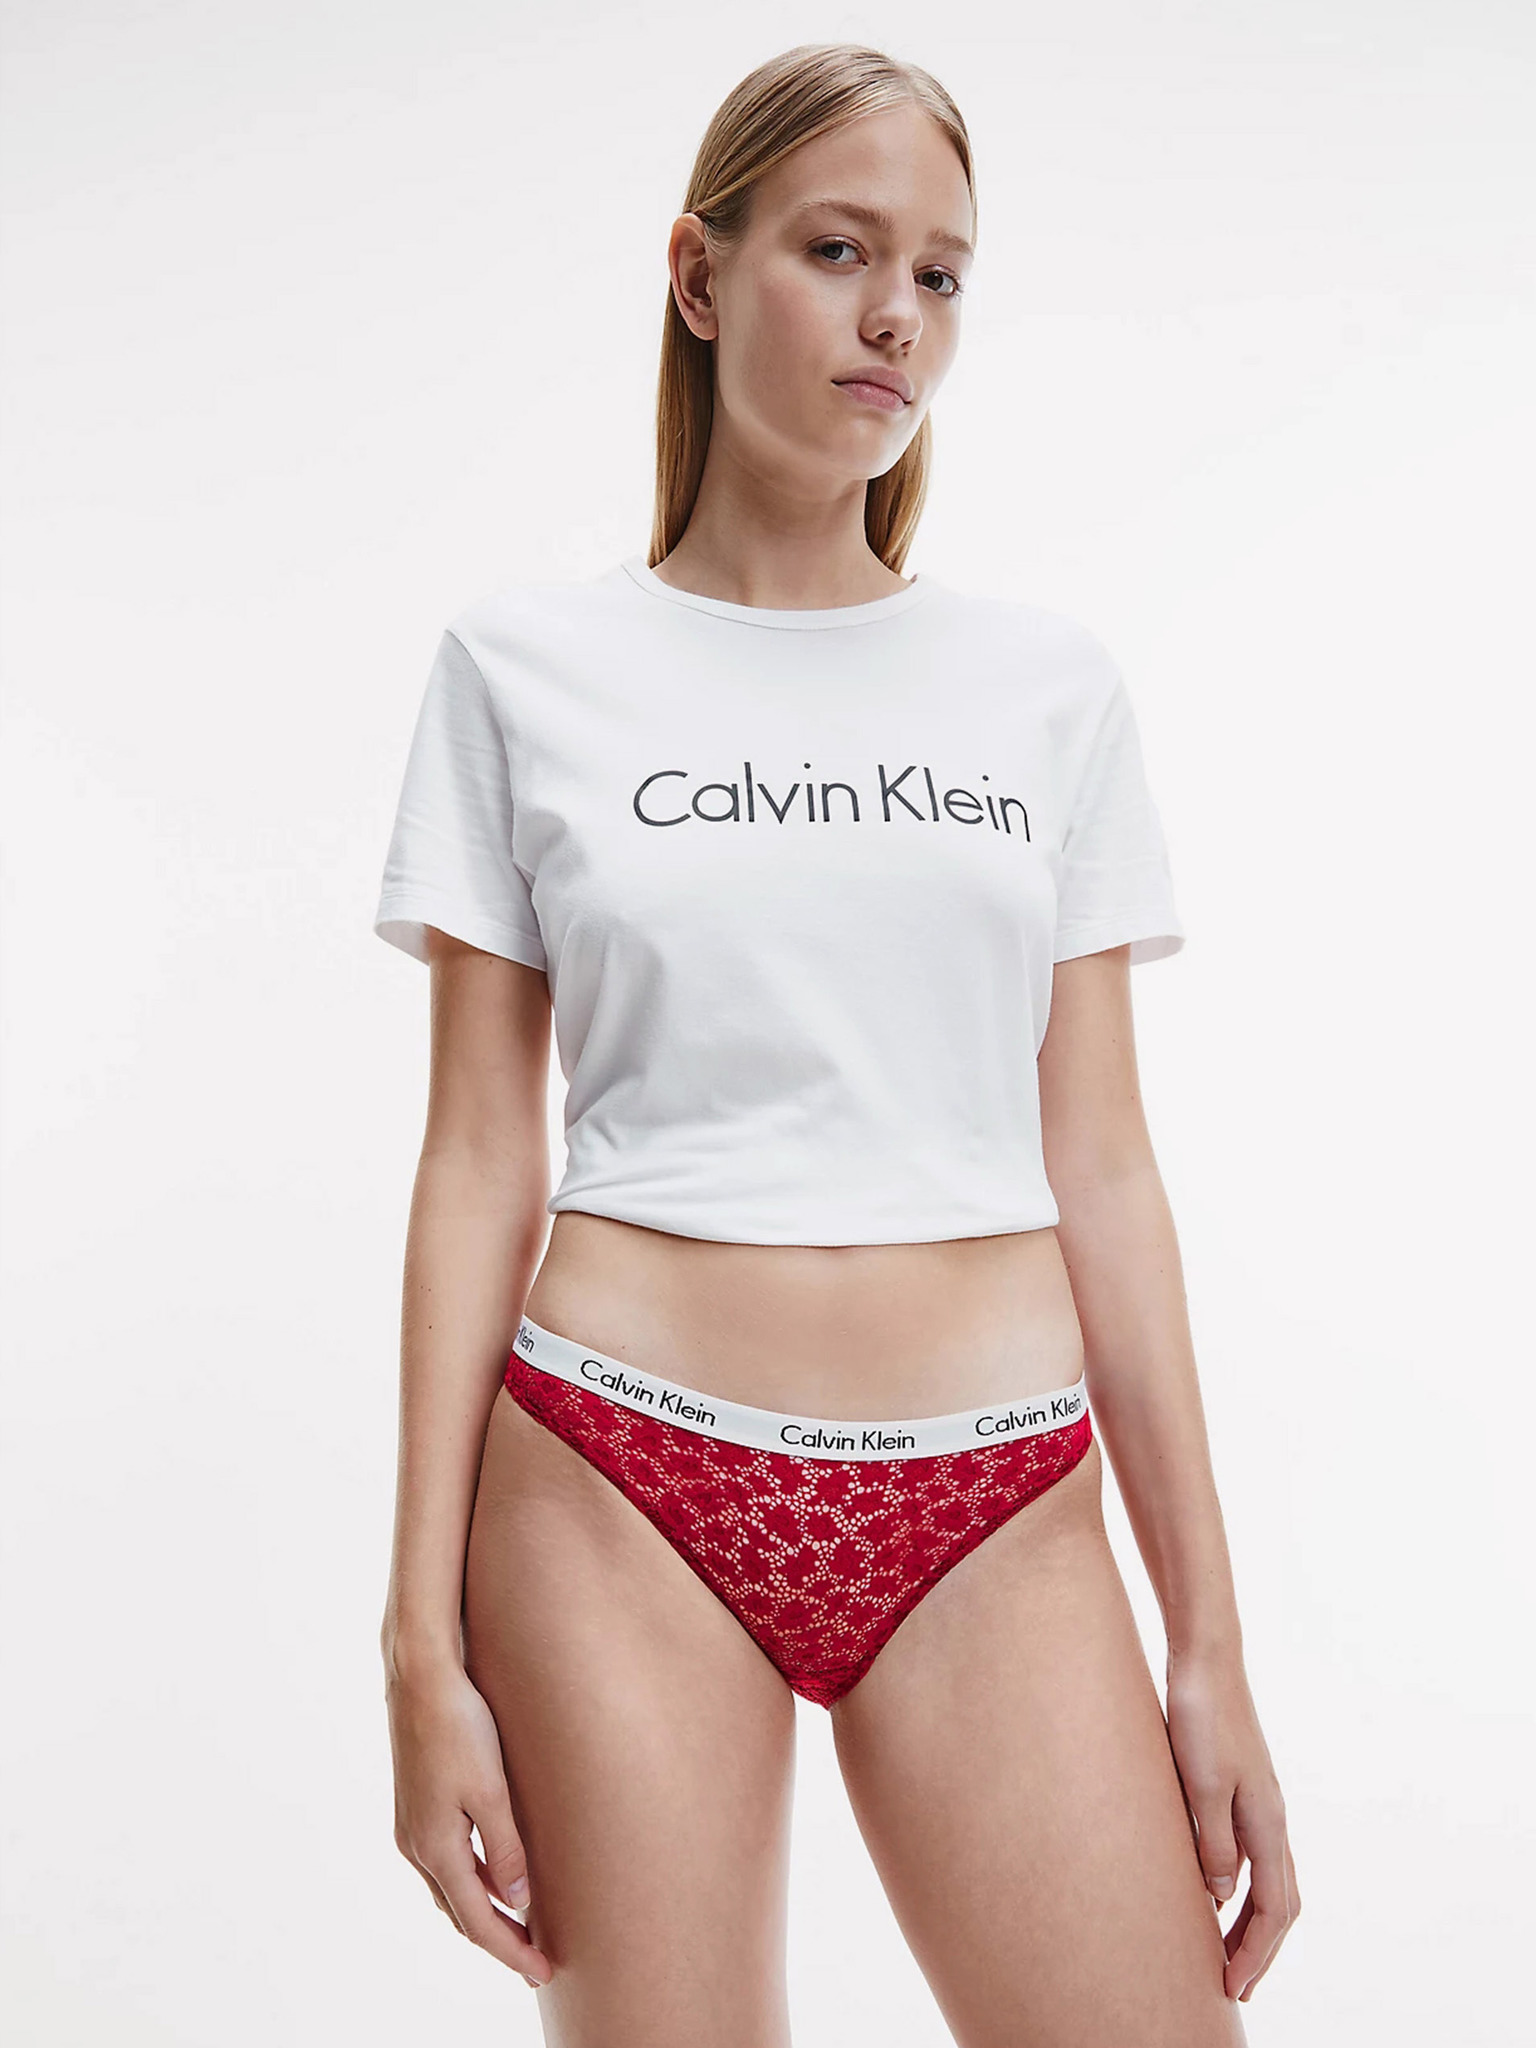 Cueca Calvin Klein Hipster